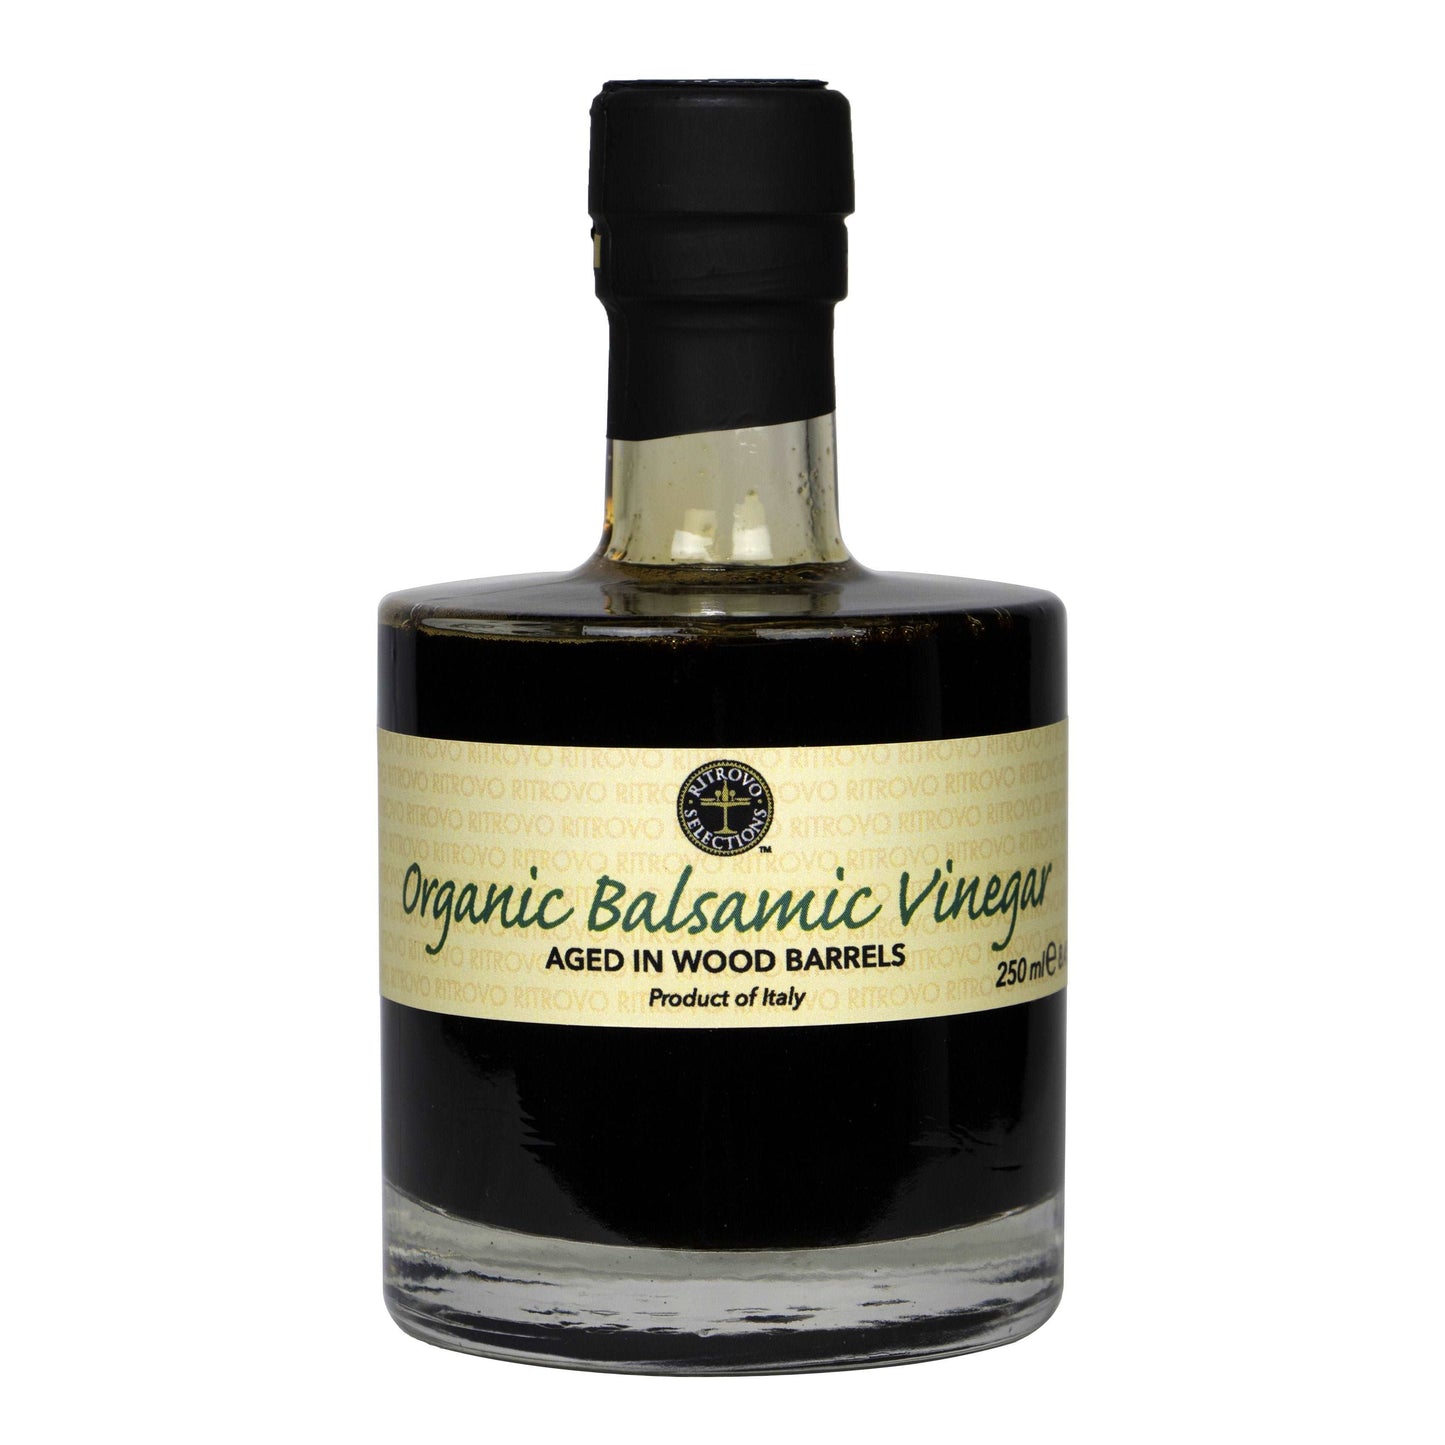 VR aceti Balsam Organic Balsamic Vinegar - Sofia Bottle